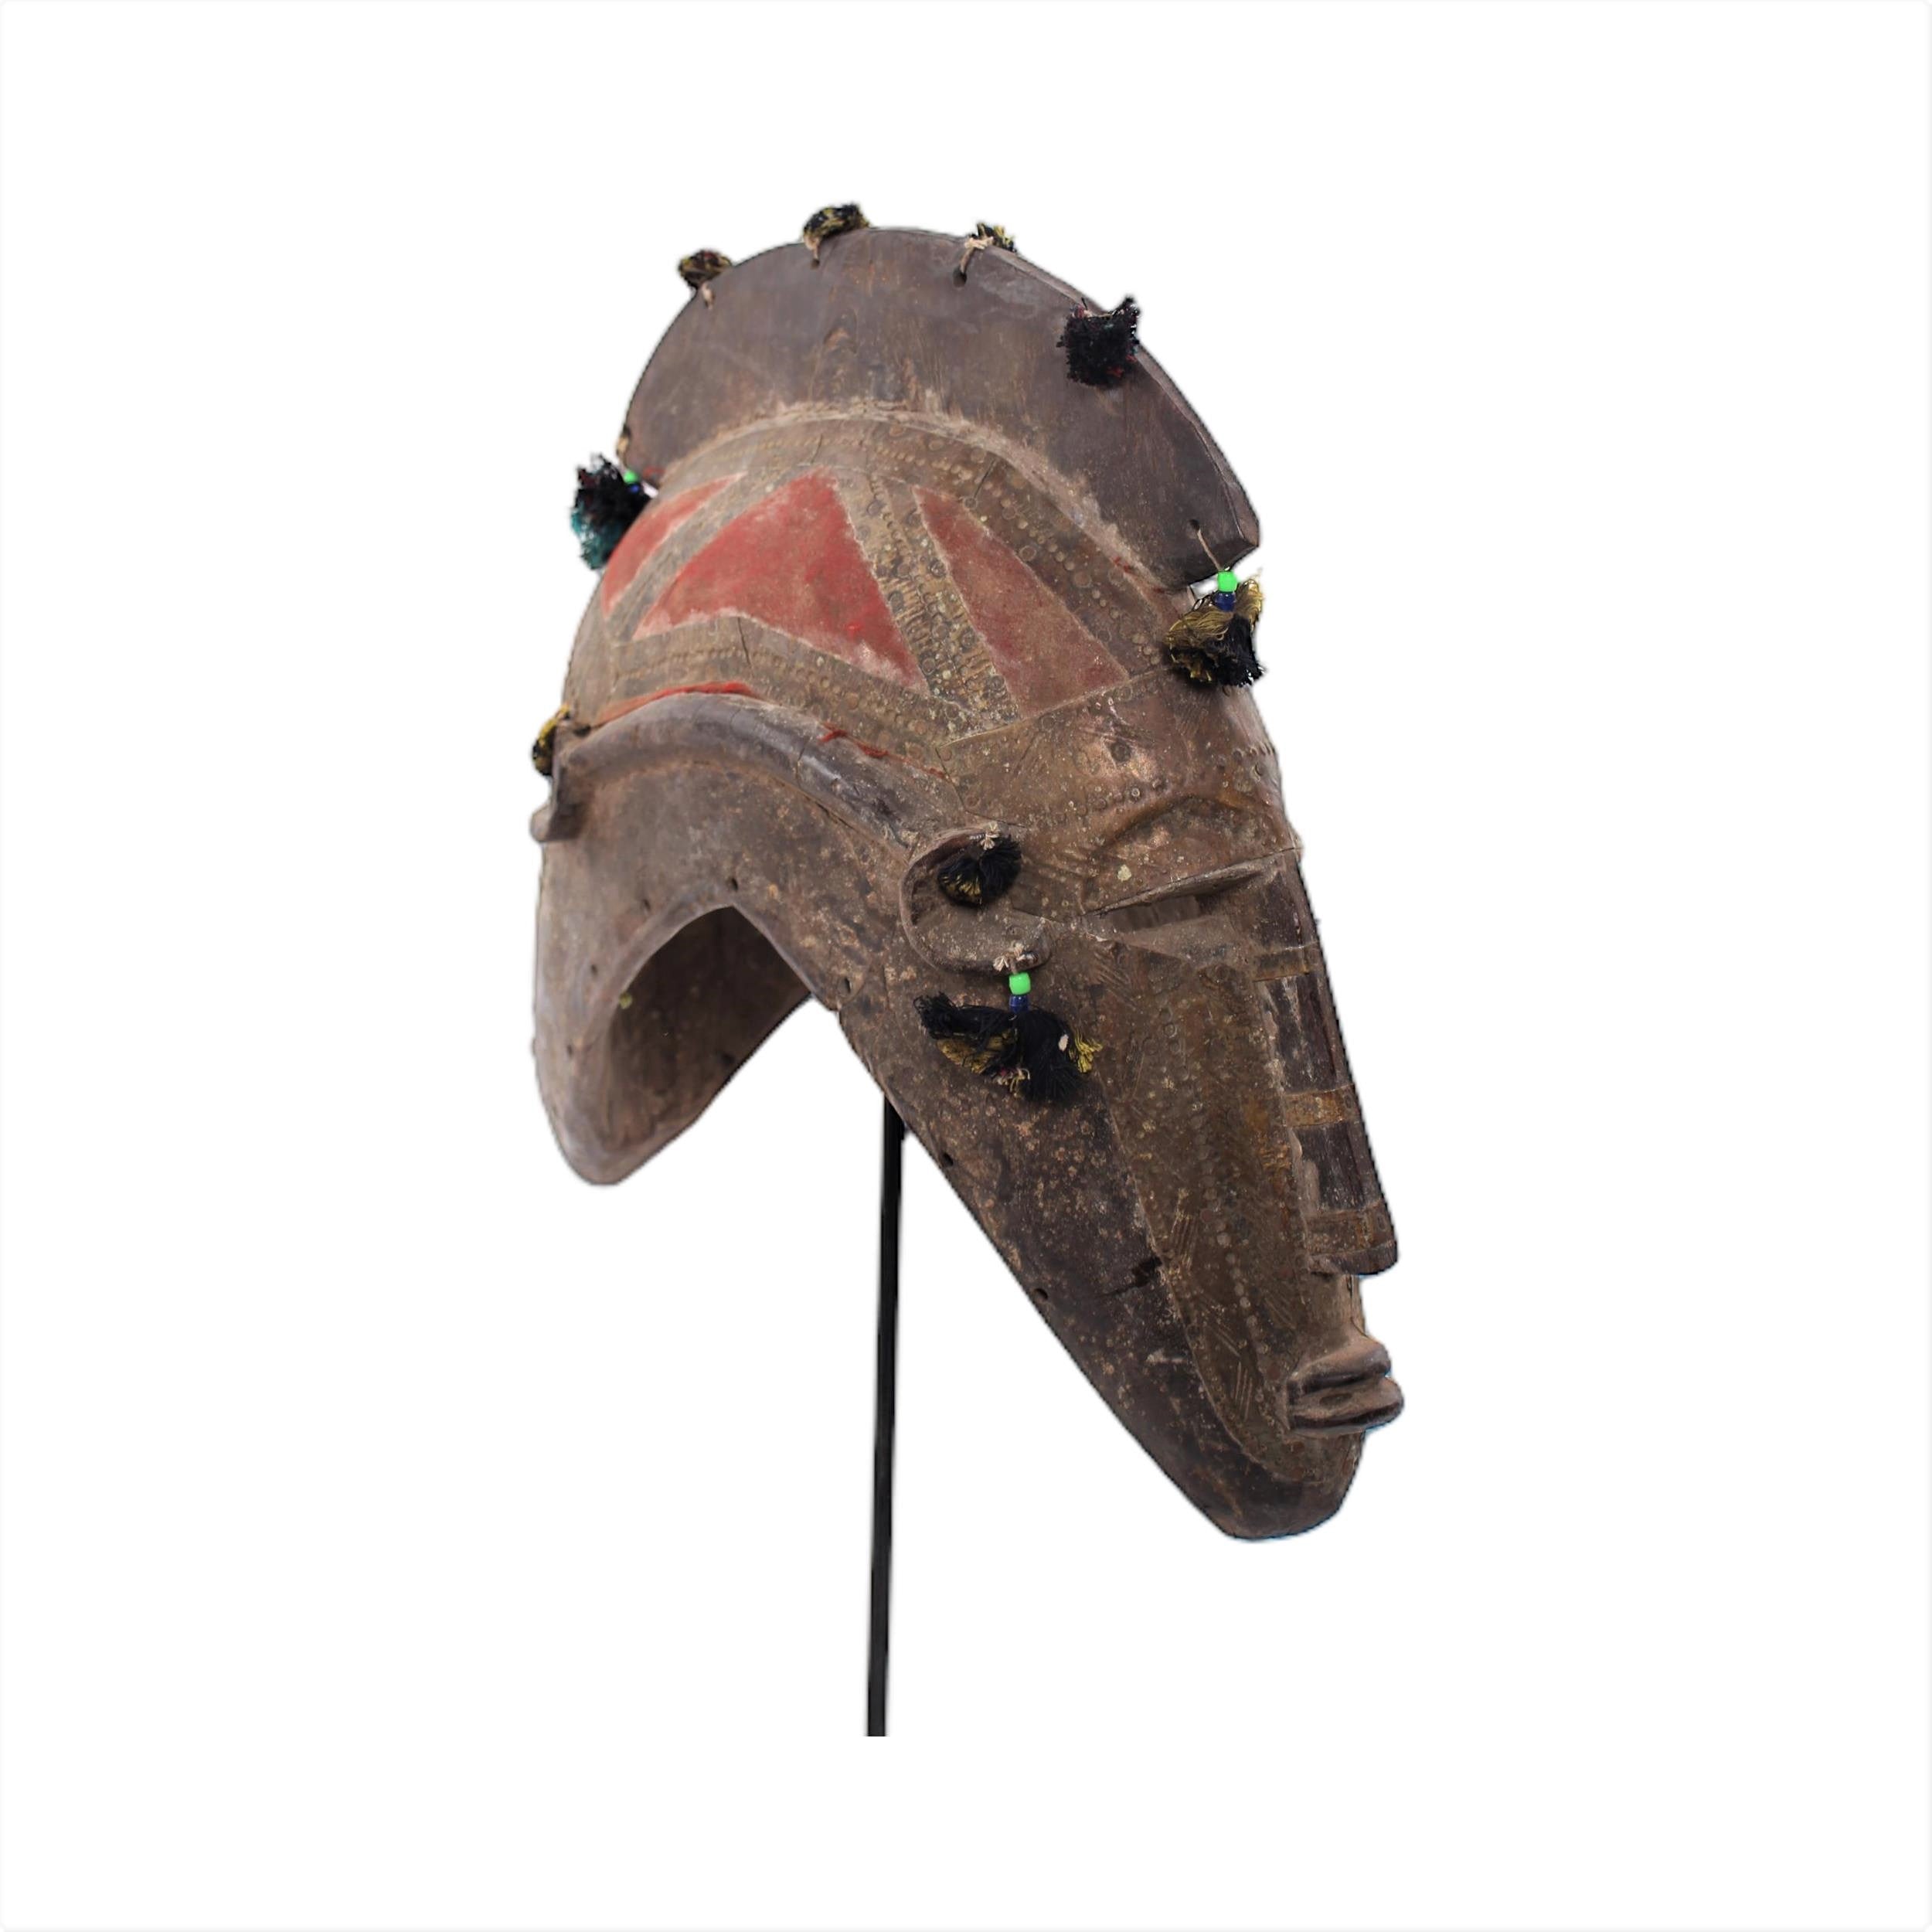 Marka Tribe Mask ~25.6" Tall